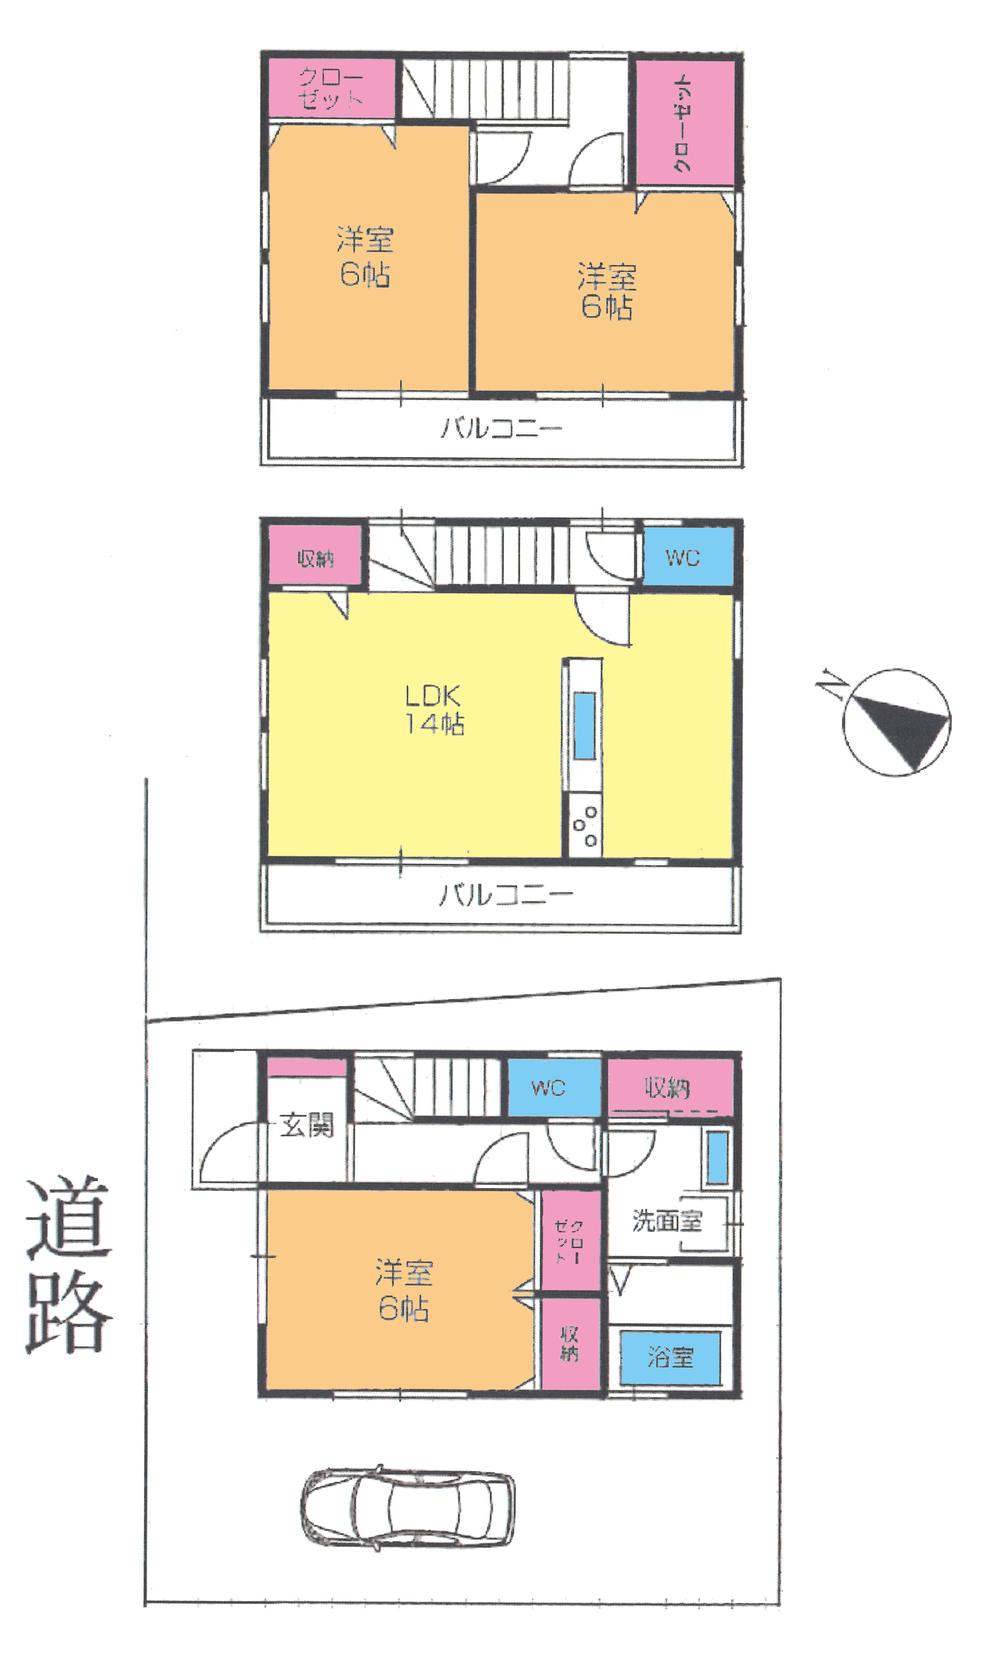 Floor plan. 29,800,000 yen, 3LDK, Land area 70.89 sq m , Building area 86.94 sq m floor plan